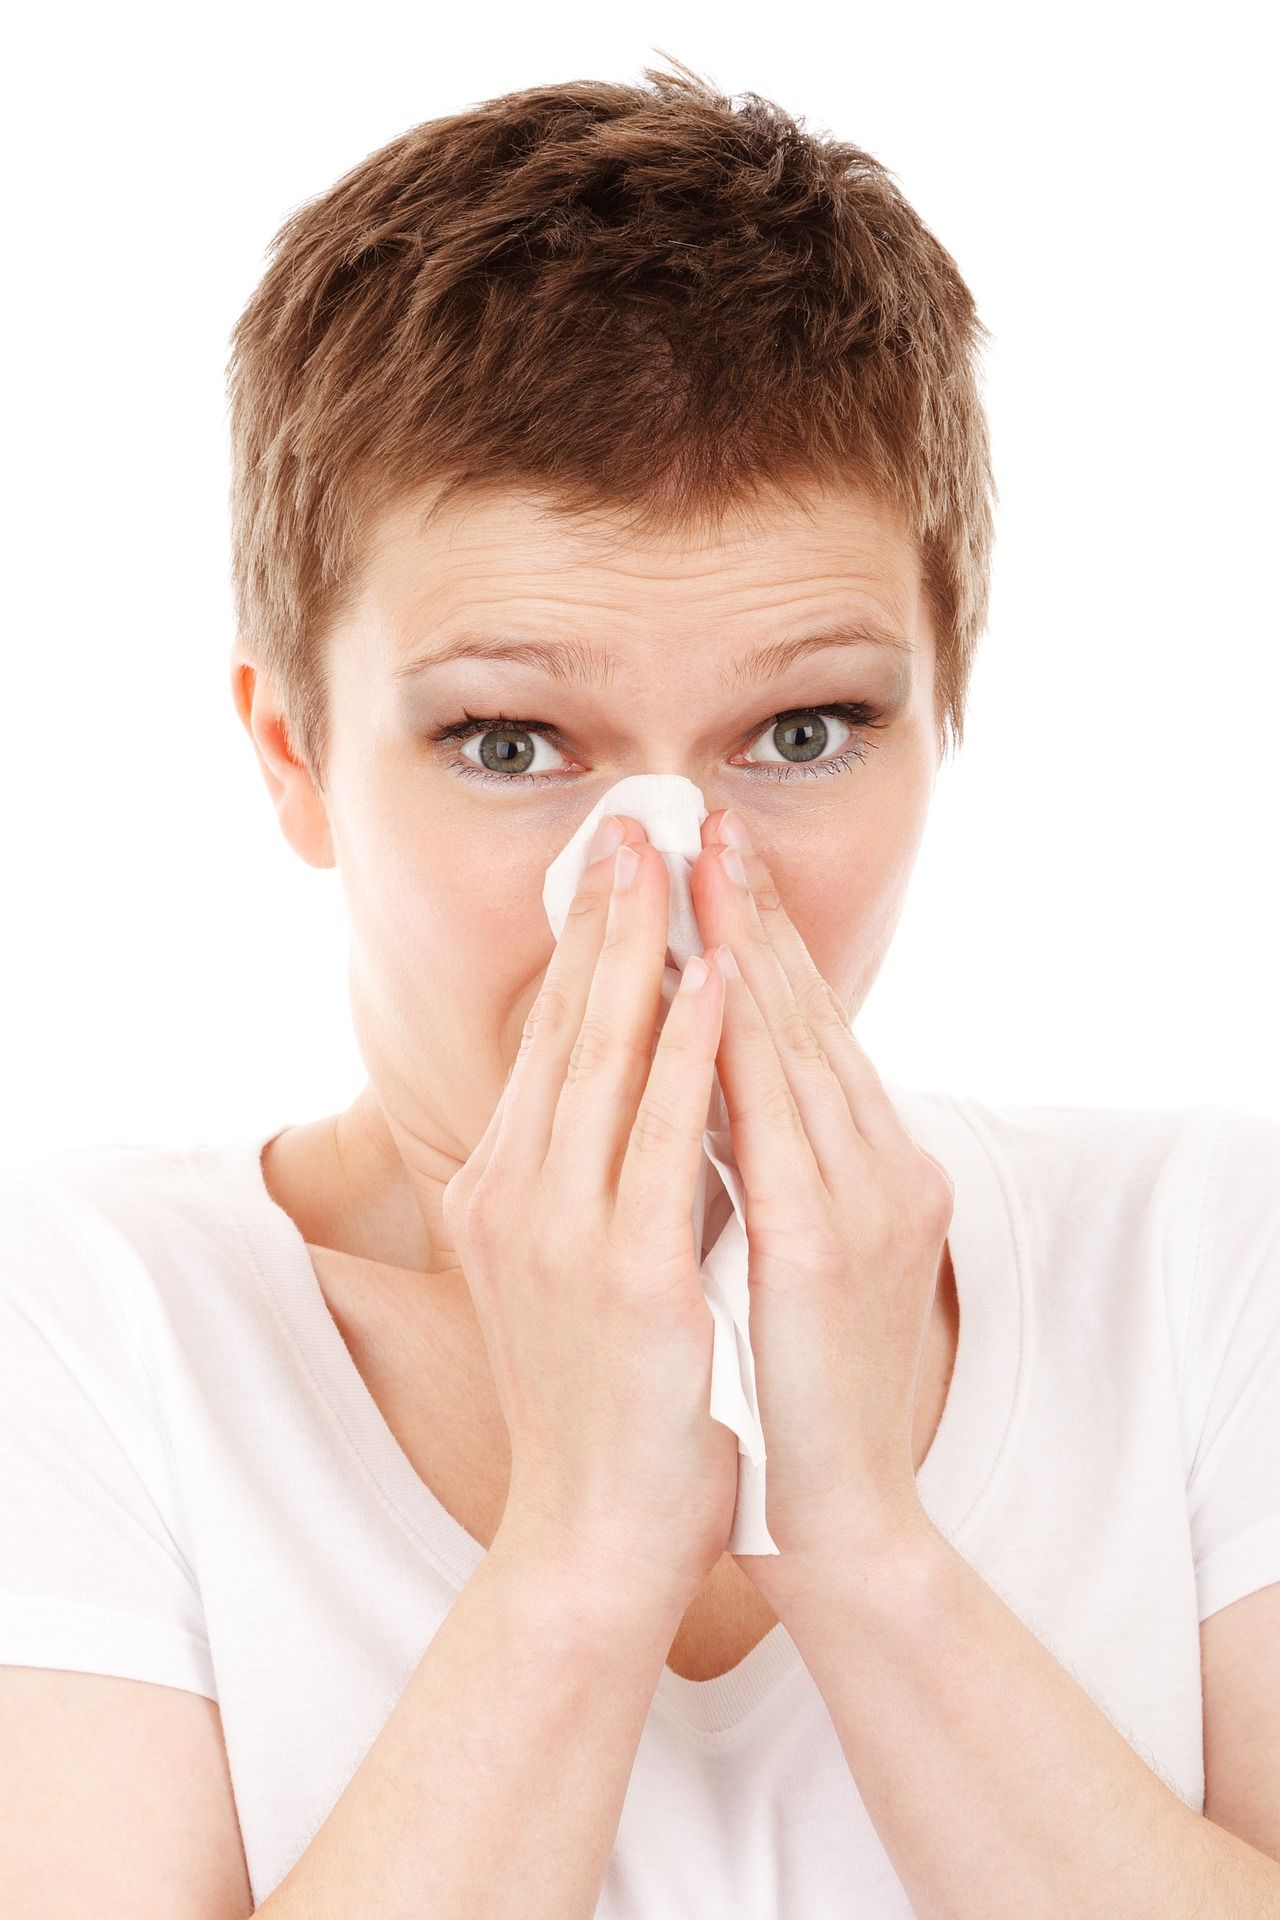 Trápia vás alergie? 5 tipov ako bojovať proti prachu